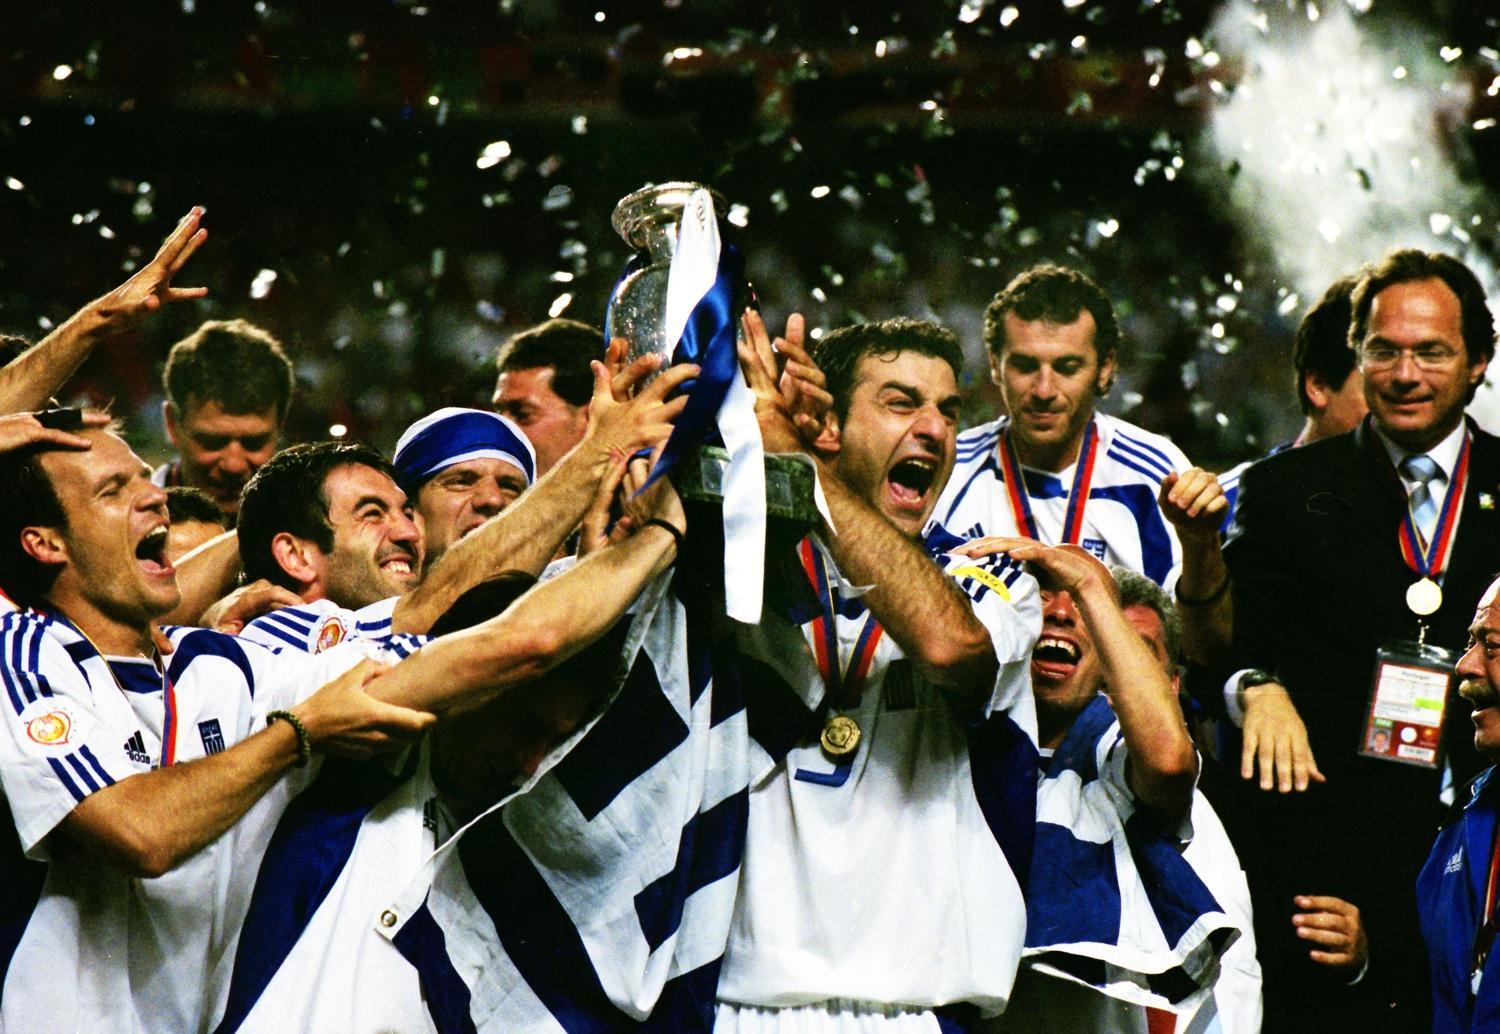 18 χρόνια από το έπος του Euro 2004  Ελλάδα η πιο απροσδόκητη πρωταθλήτρια Ευρώπης